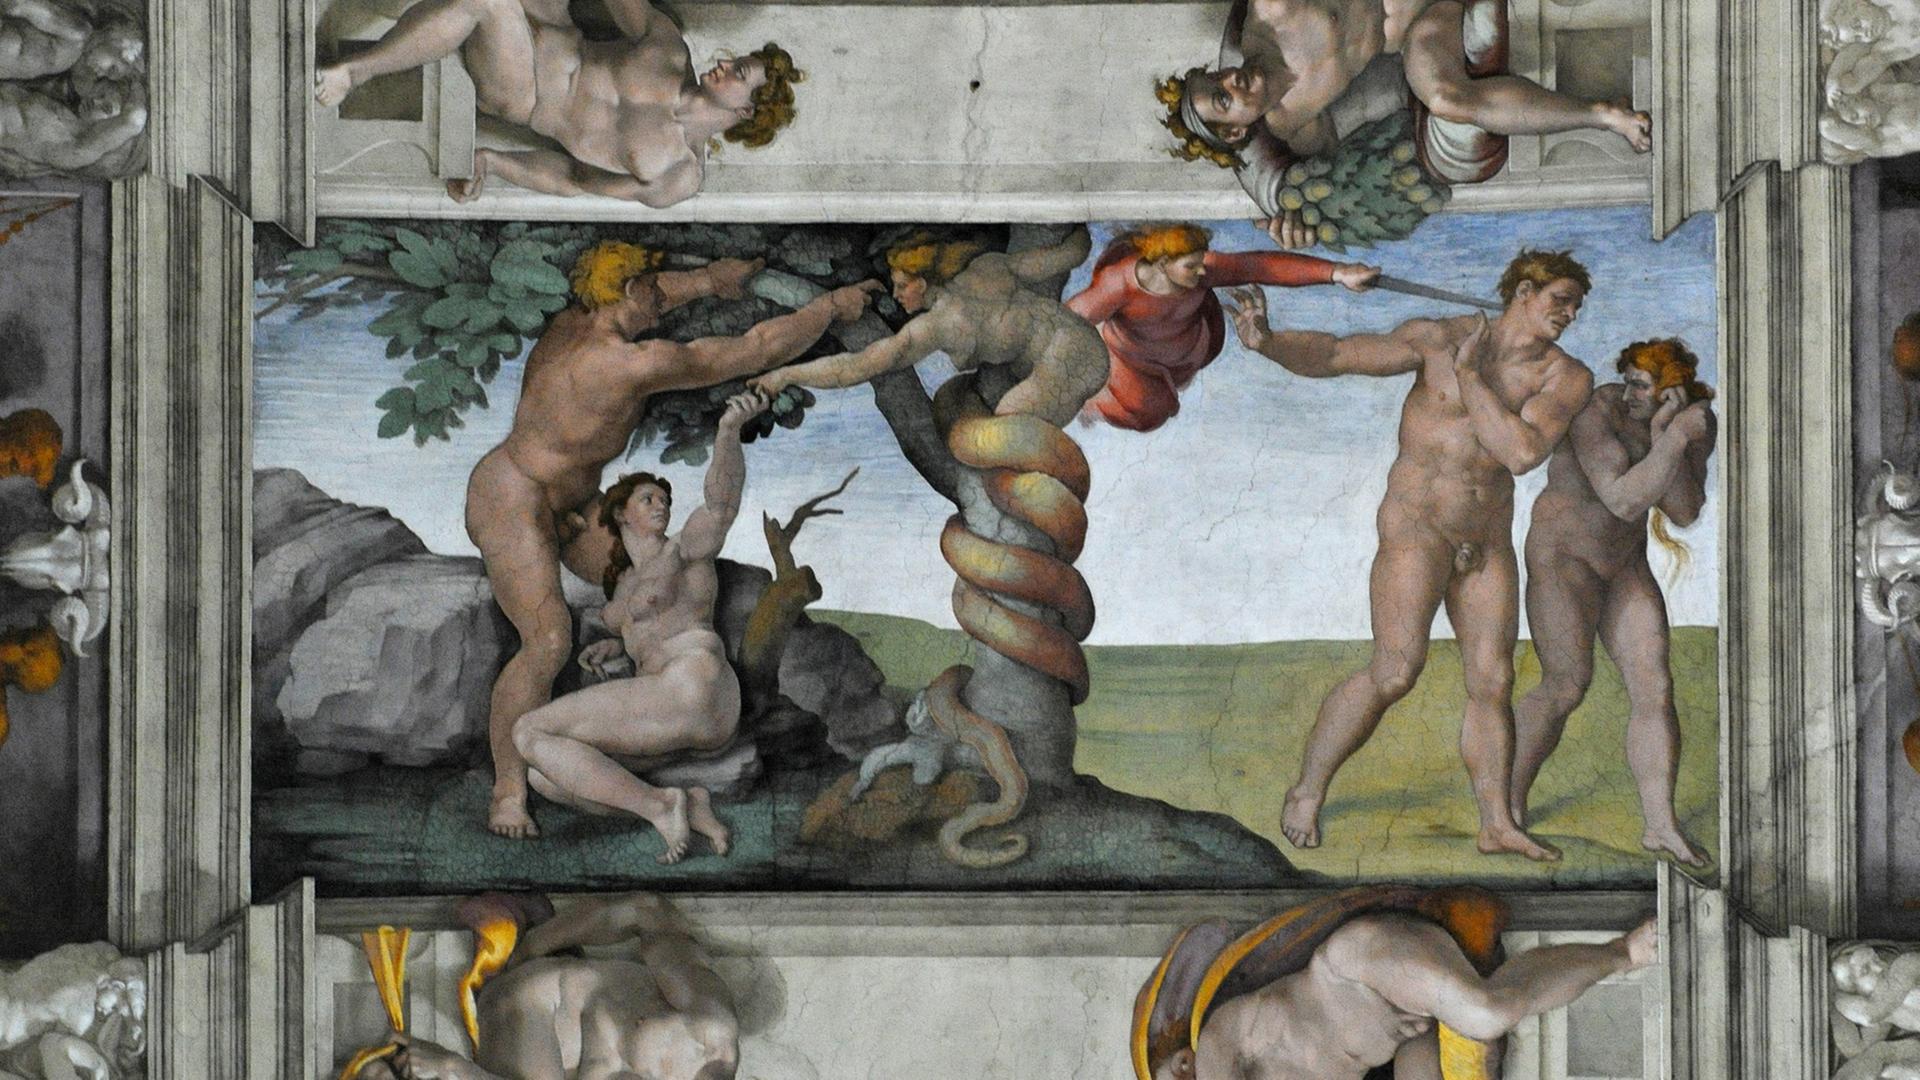 Deckenmalerei "Sündenfall und Vertreibung aus dem Paradies" von Michelangelo in der Sixtinischen Kapelle in Rom